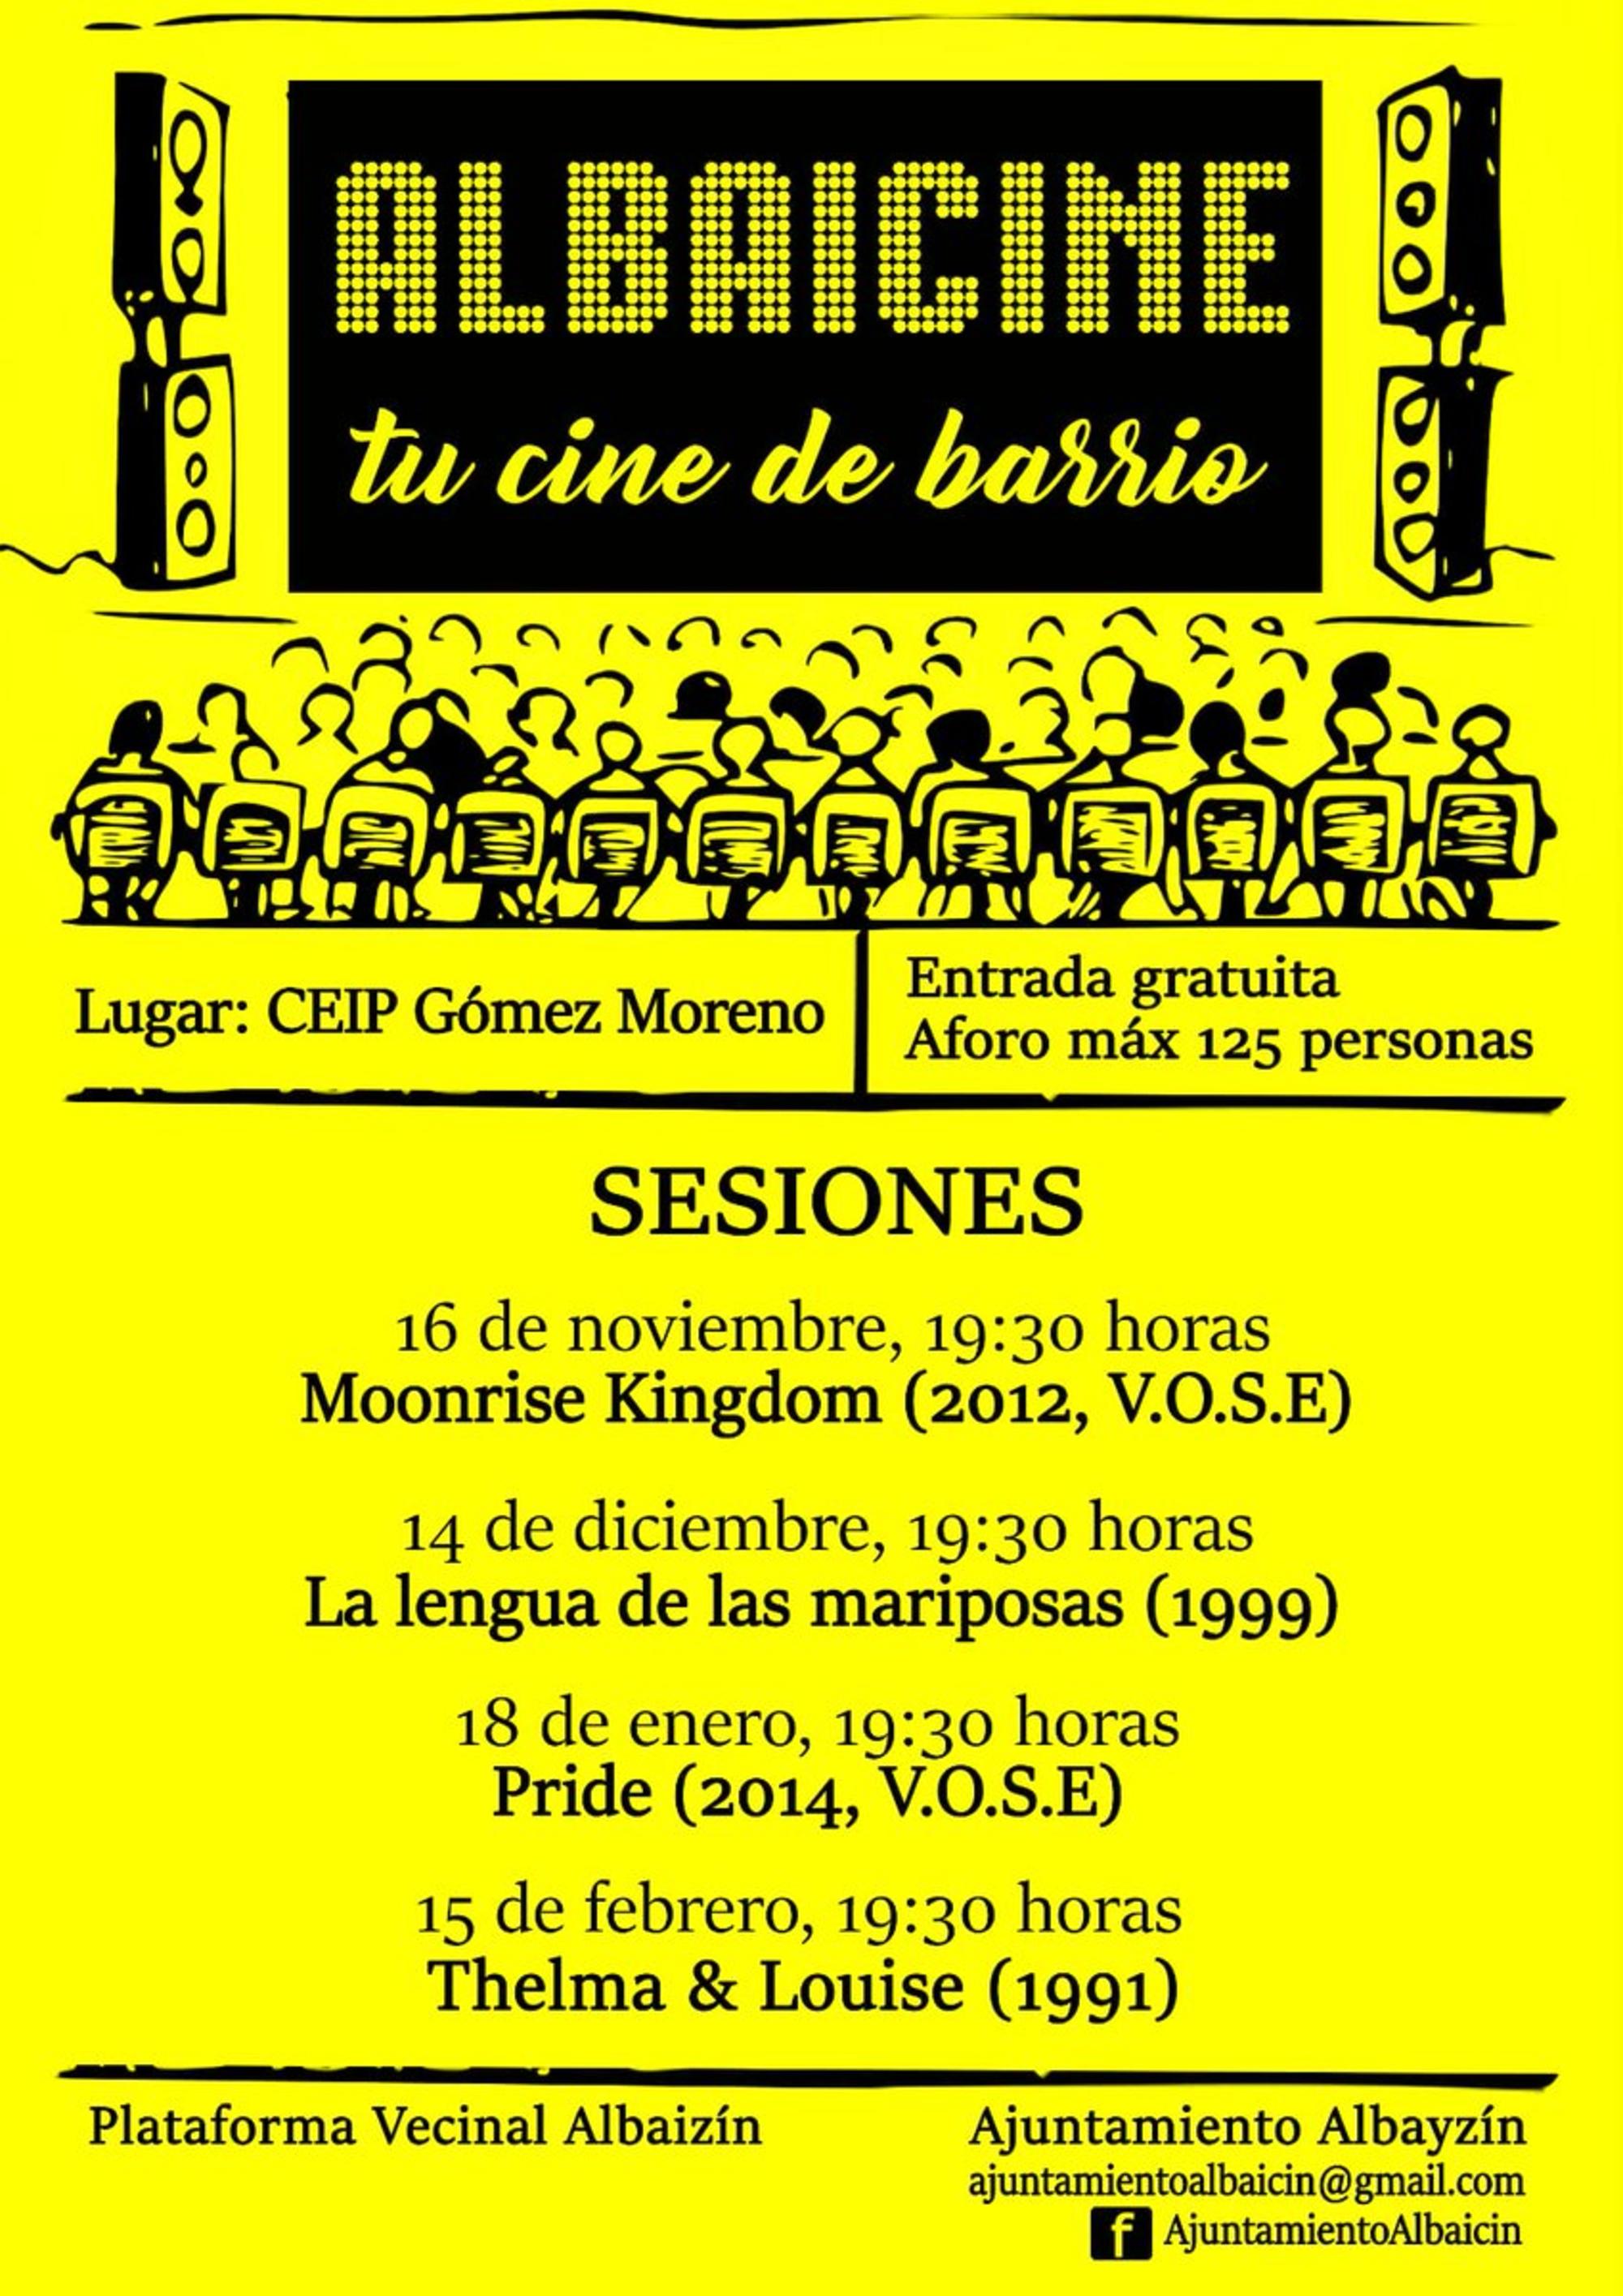 Cartel del ciclo de cine Albaicine en Granada cuya colocación le ha supuesto una multa de 105 euros a un vecino